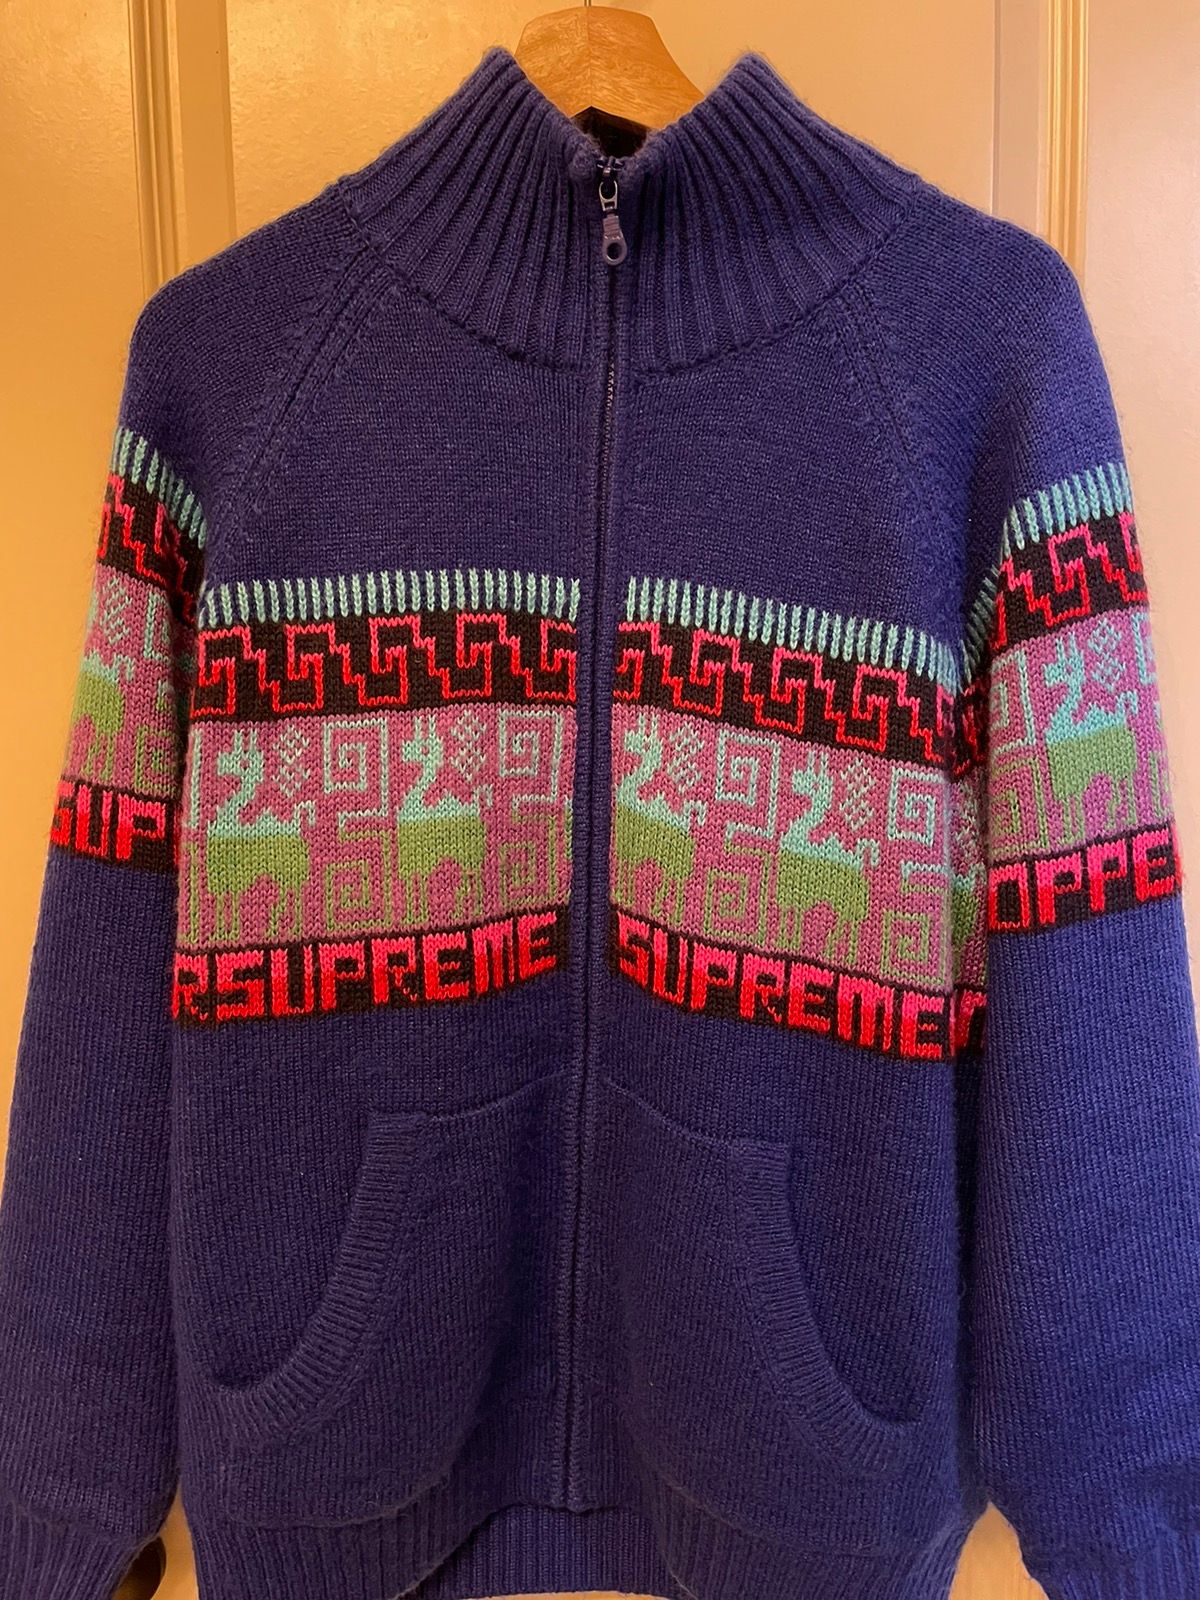 Supreme Supreme Chullo Windstopper Zip Up Sweater | Grailed